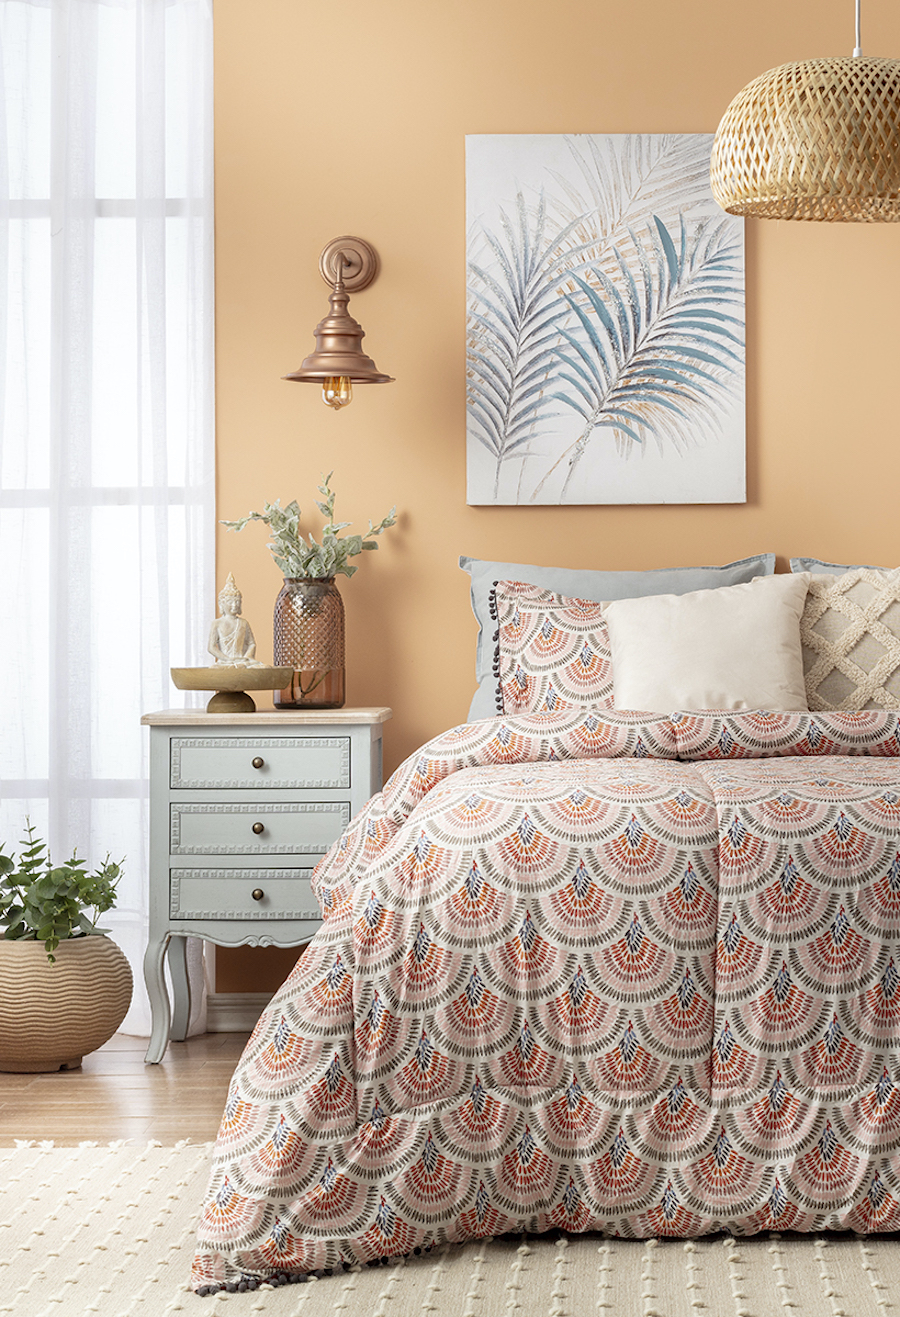 Dormitorio de estilo Boho chic y paredes color salmón, cama con plumón de diseño en tonos rojizos y grises, cojines en tonos arena y un velador celeste pastel con adornos boho.